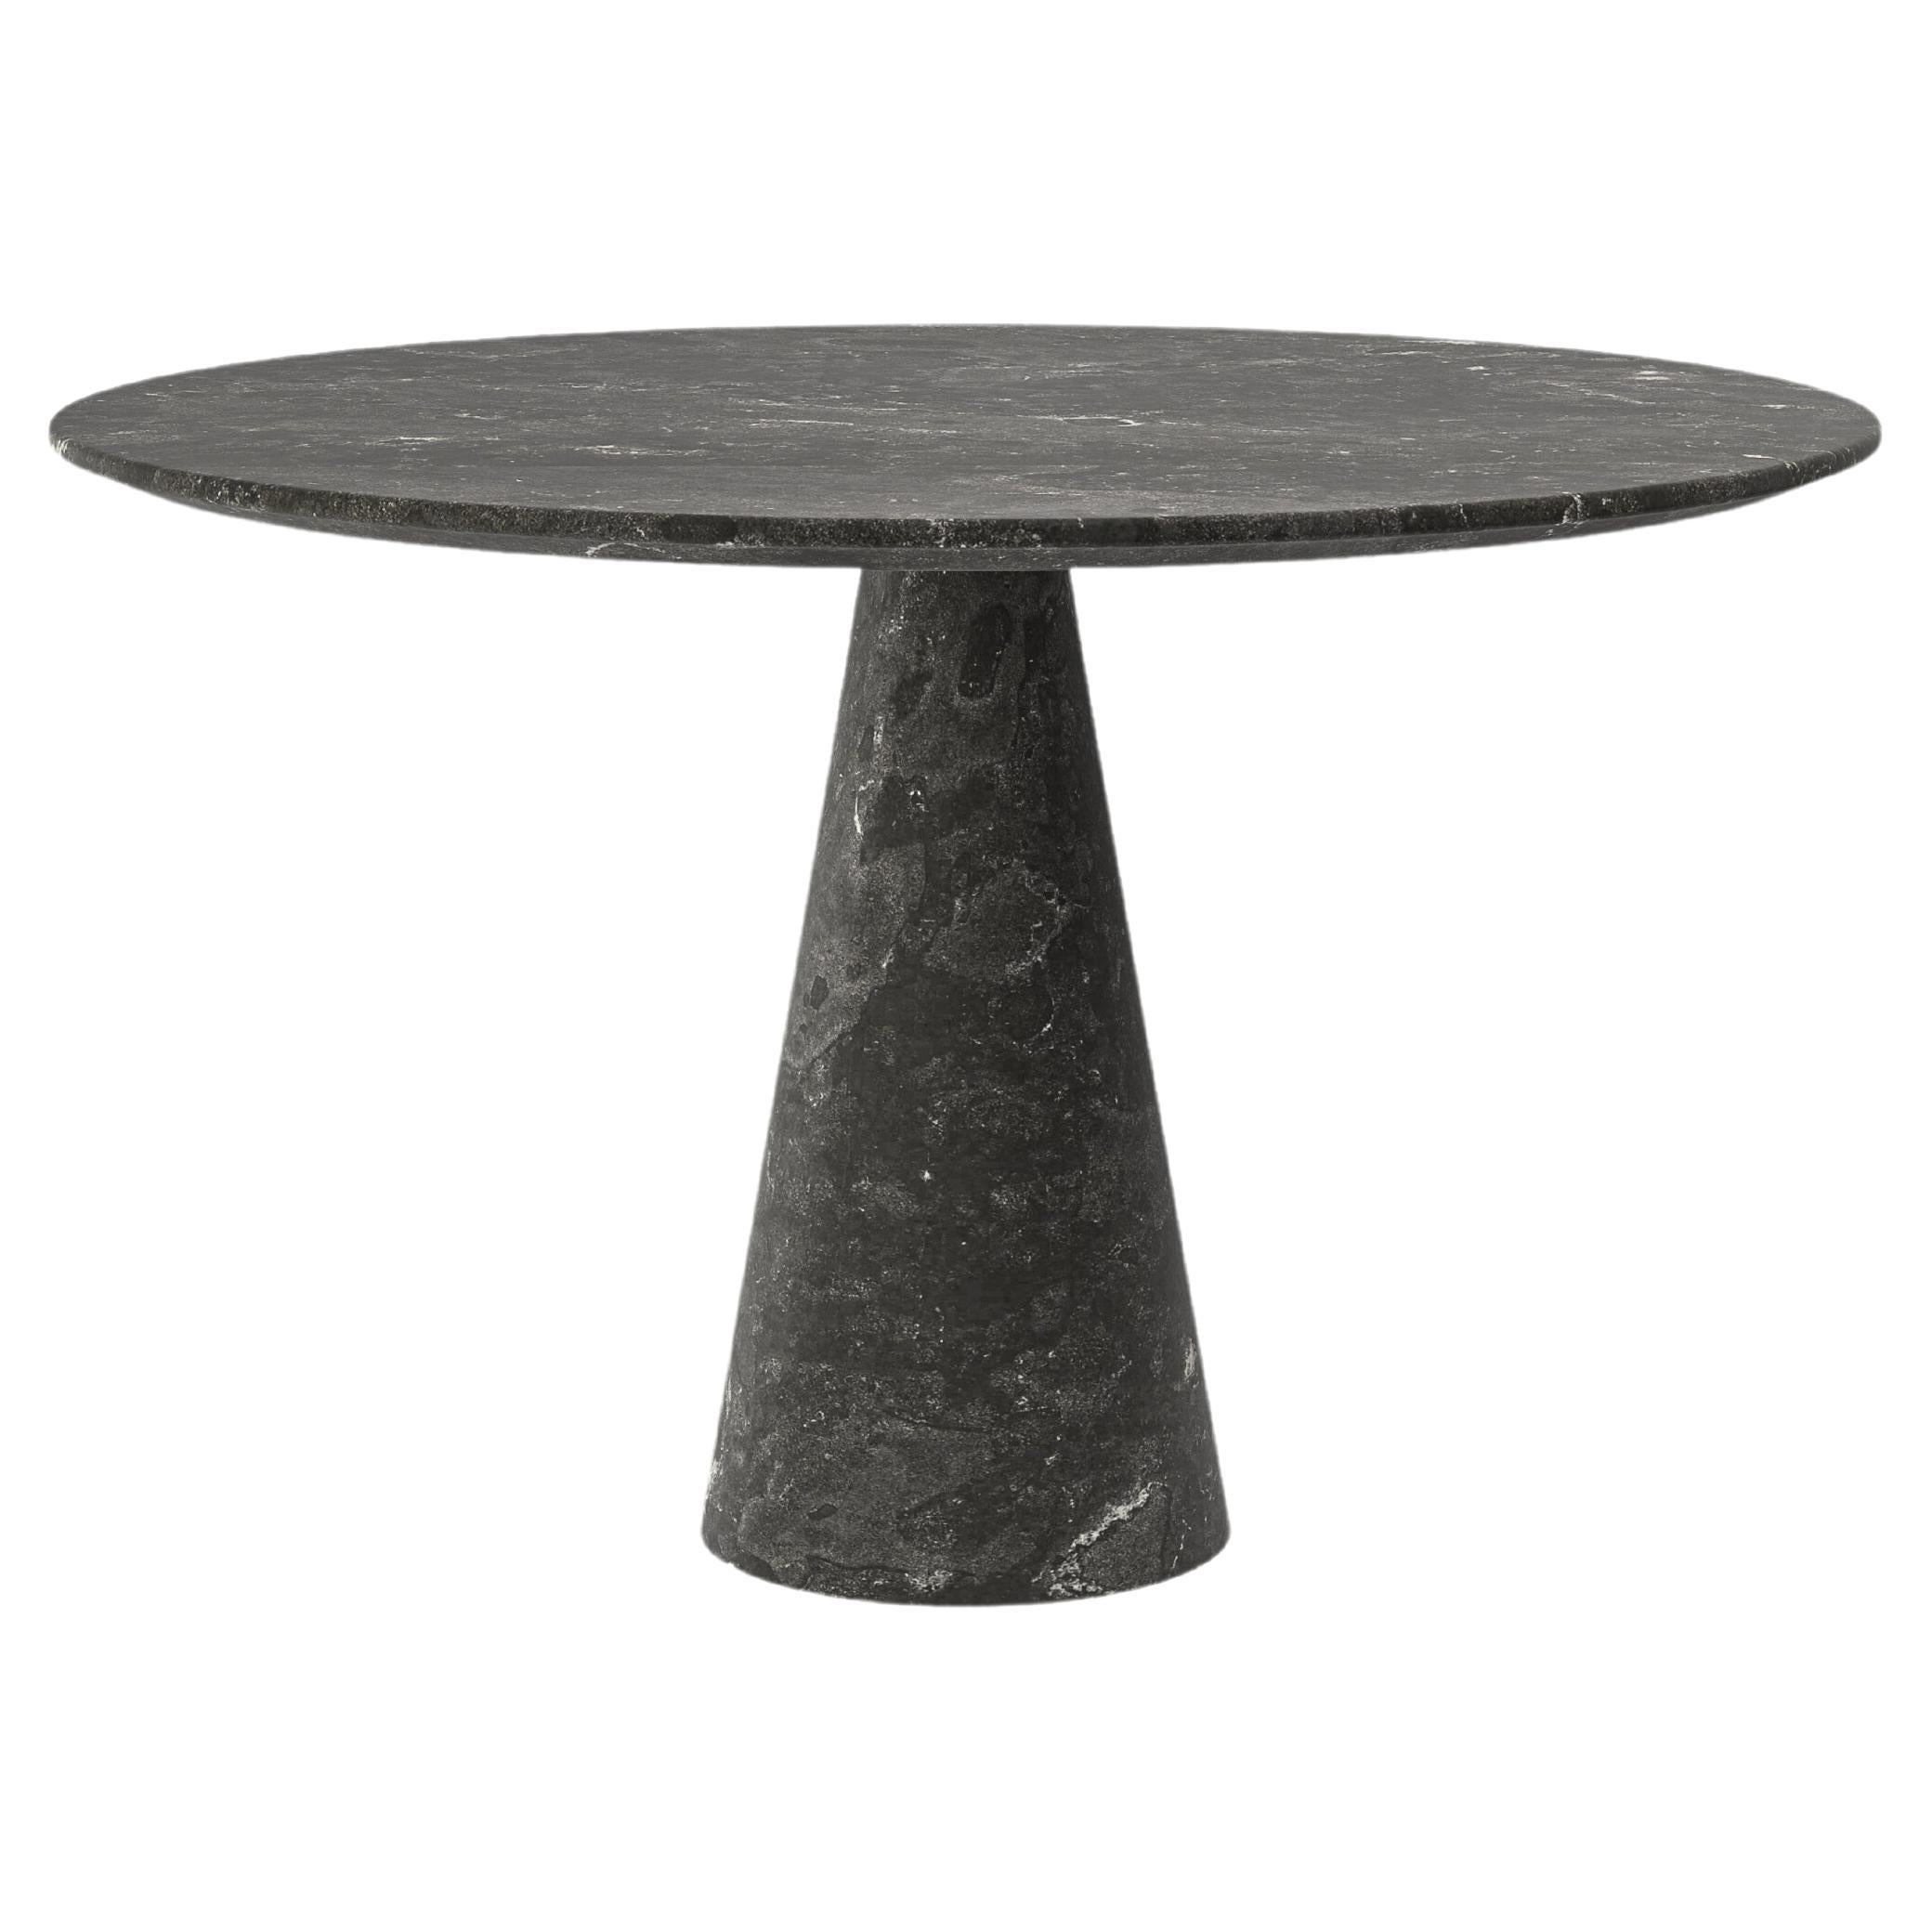 FORM(LA) Cono Round Dining Table 60”L x 60"W x 30”H Nero Petite Granite